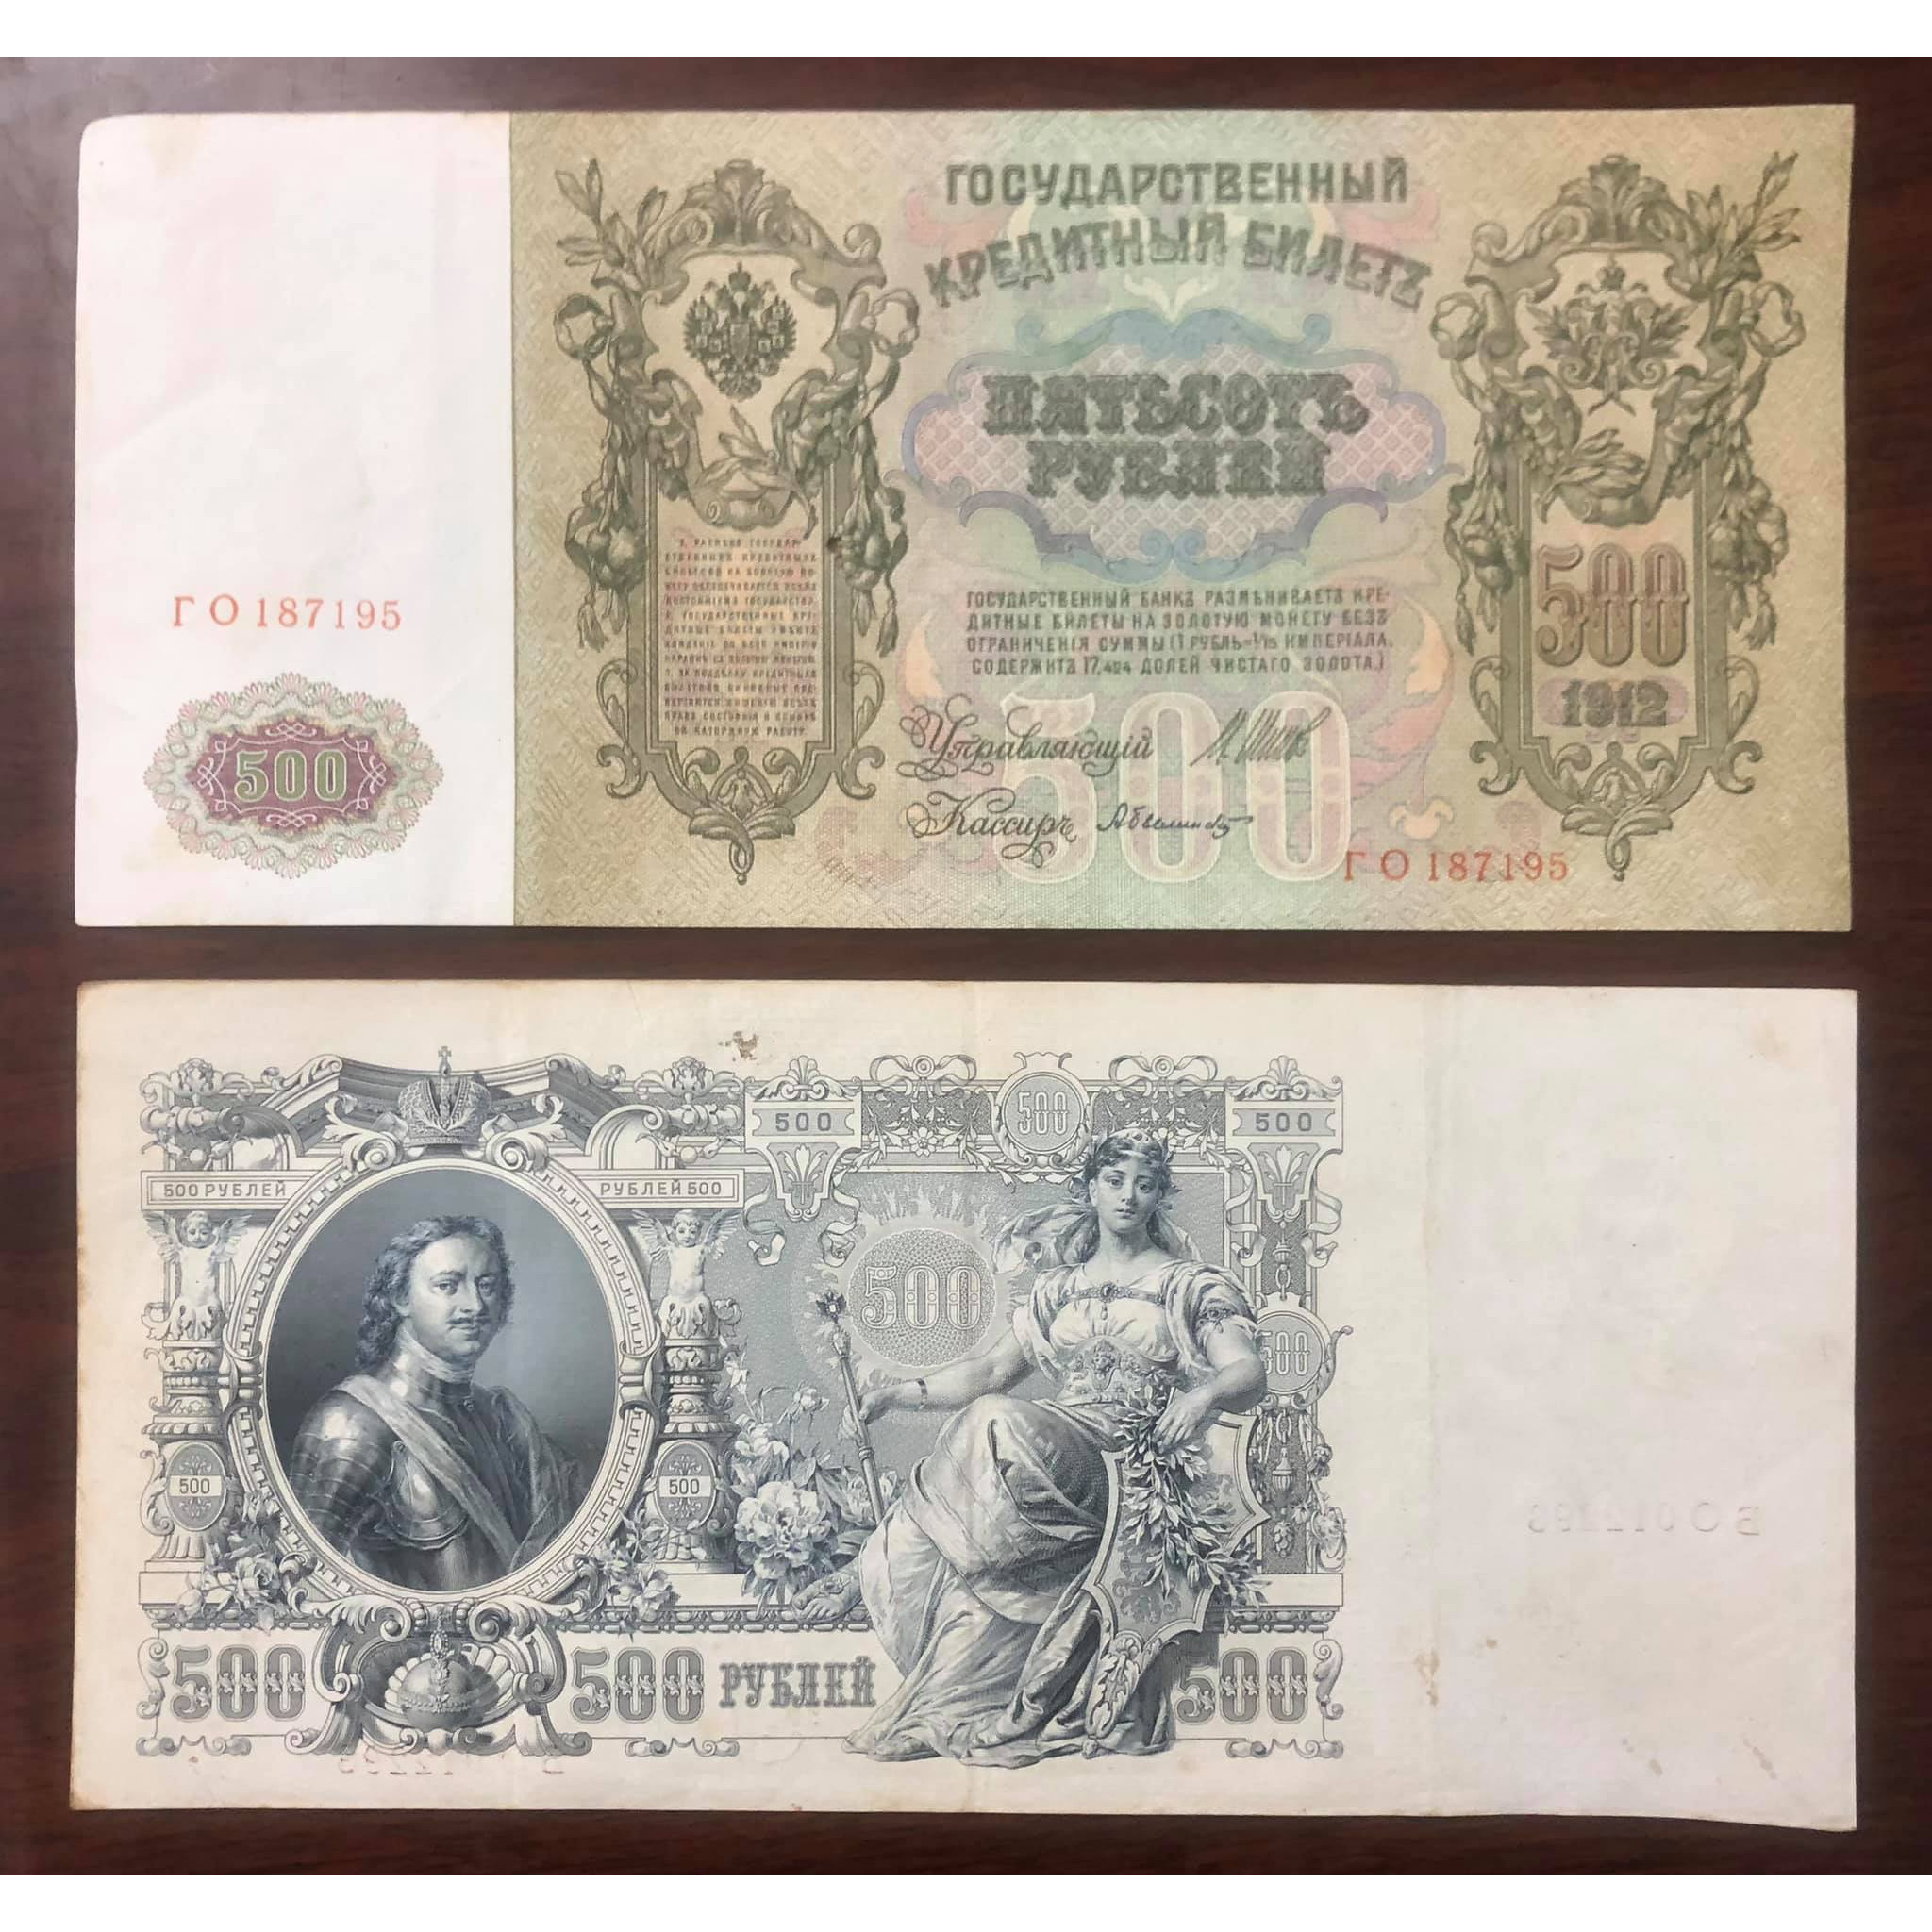 Tờ 500 Rúp Nga 1912, tờ tiền có kích thước lớn nhất thế giới, hơn 100 năm tuổi